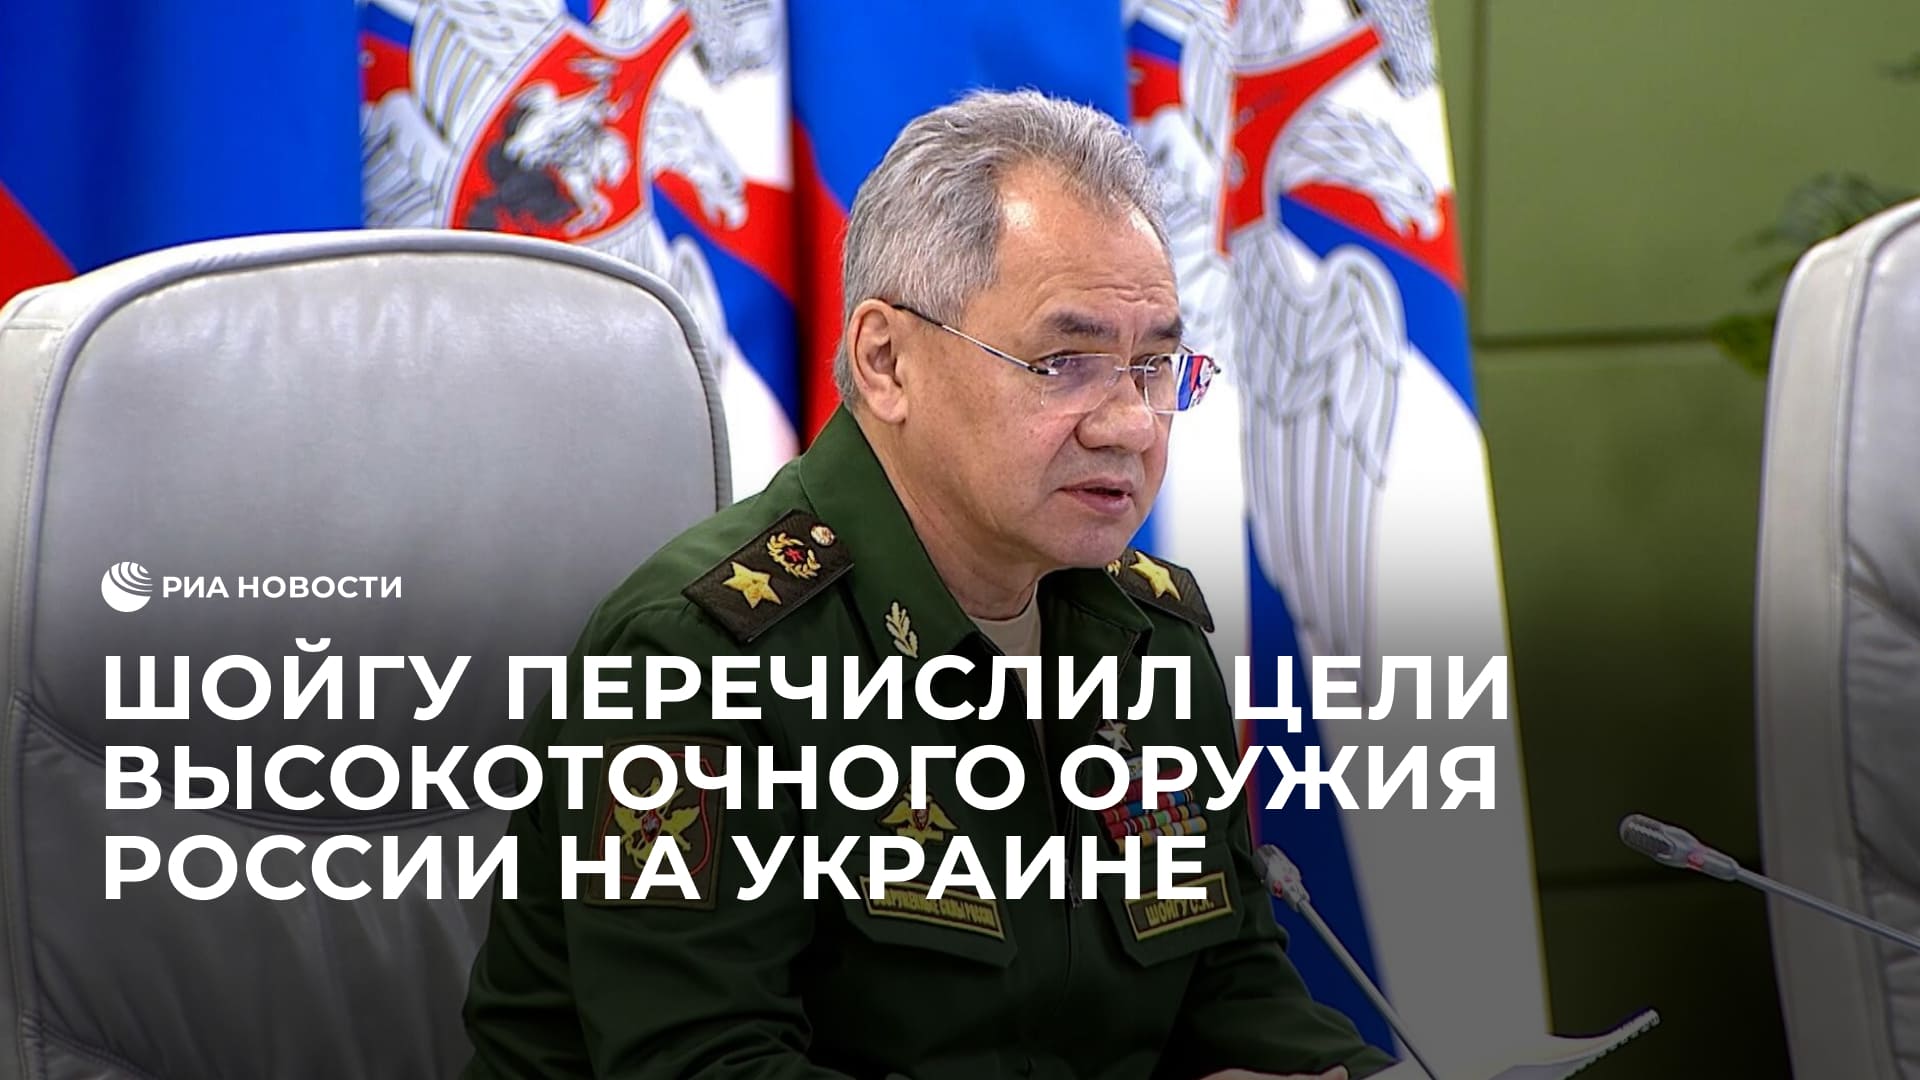 Шойгу перечислил цели высокоточного российского оружия на Украине